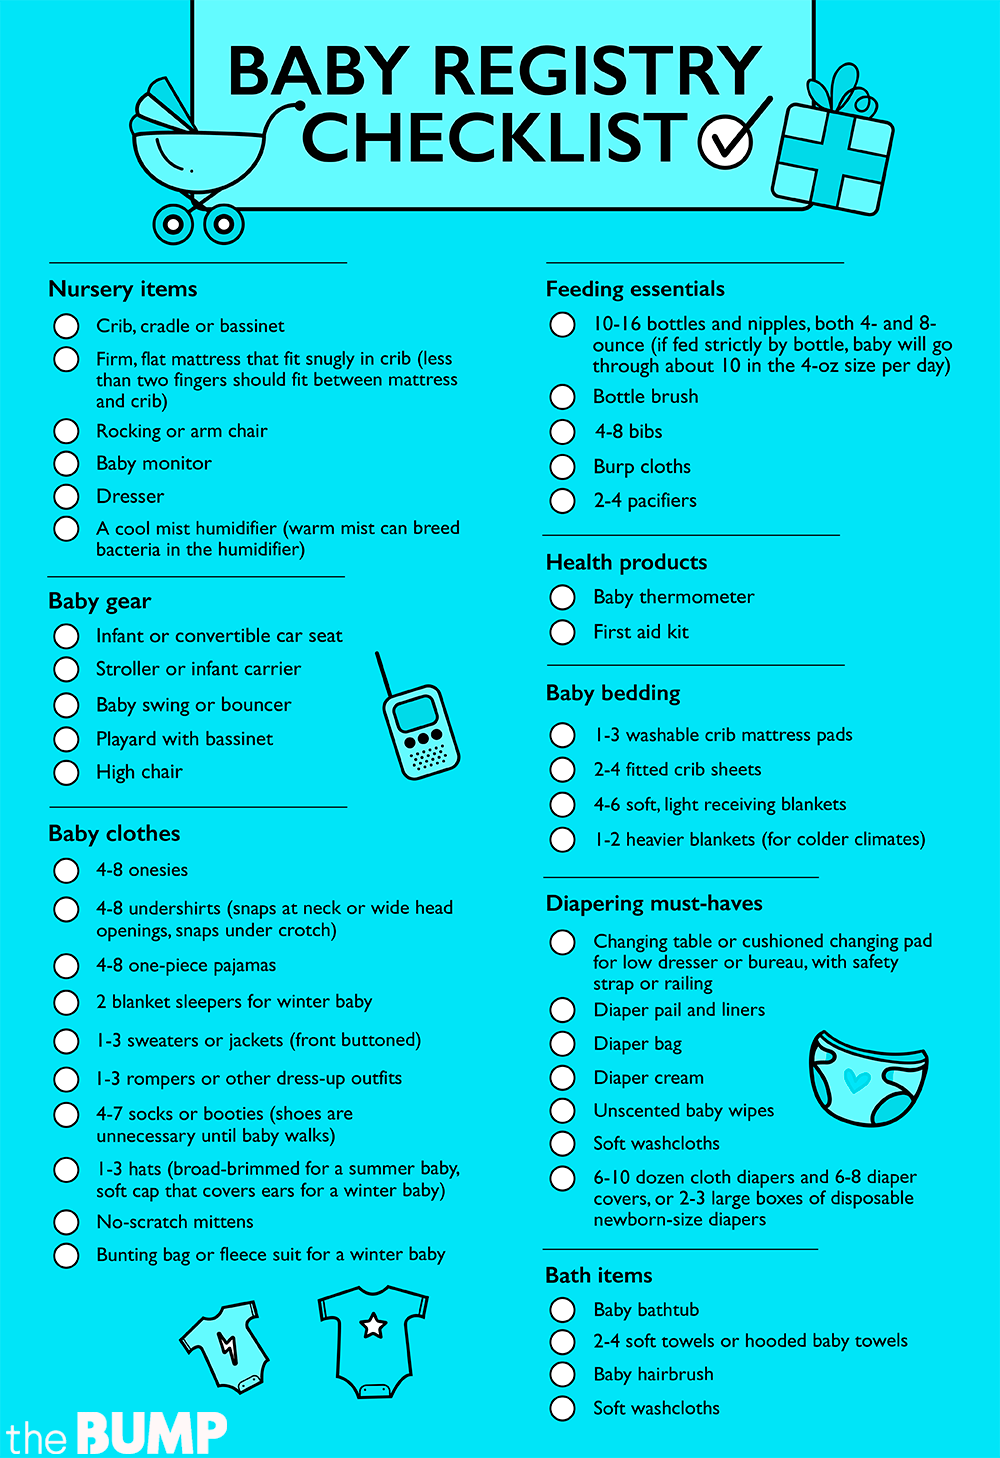 essential baby registry checklist1